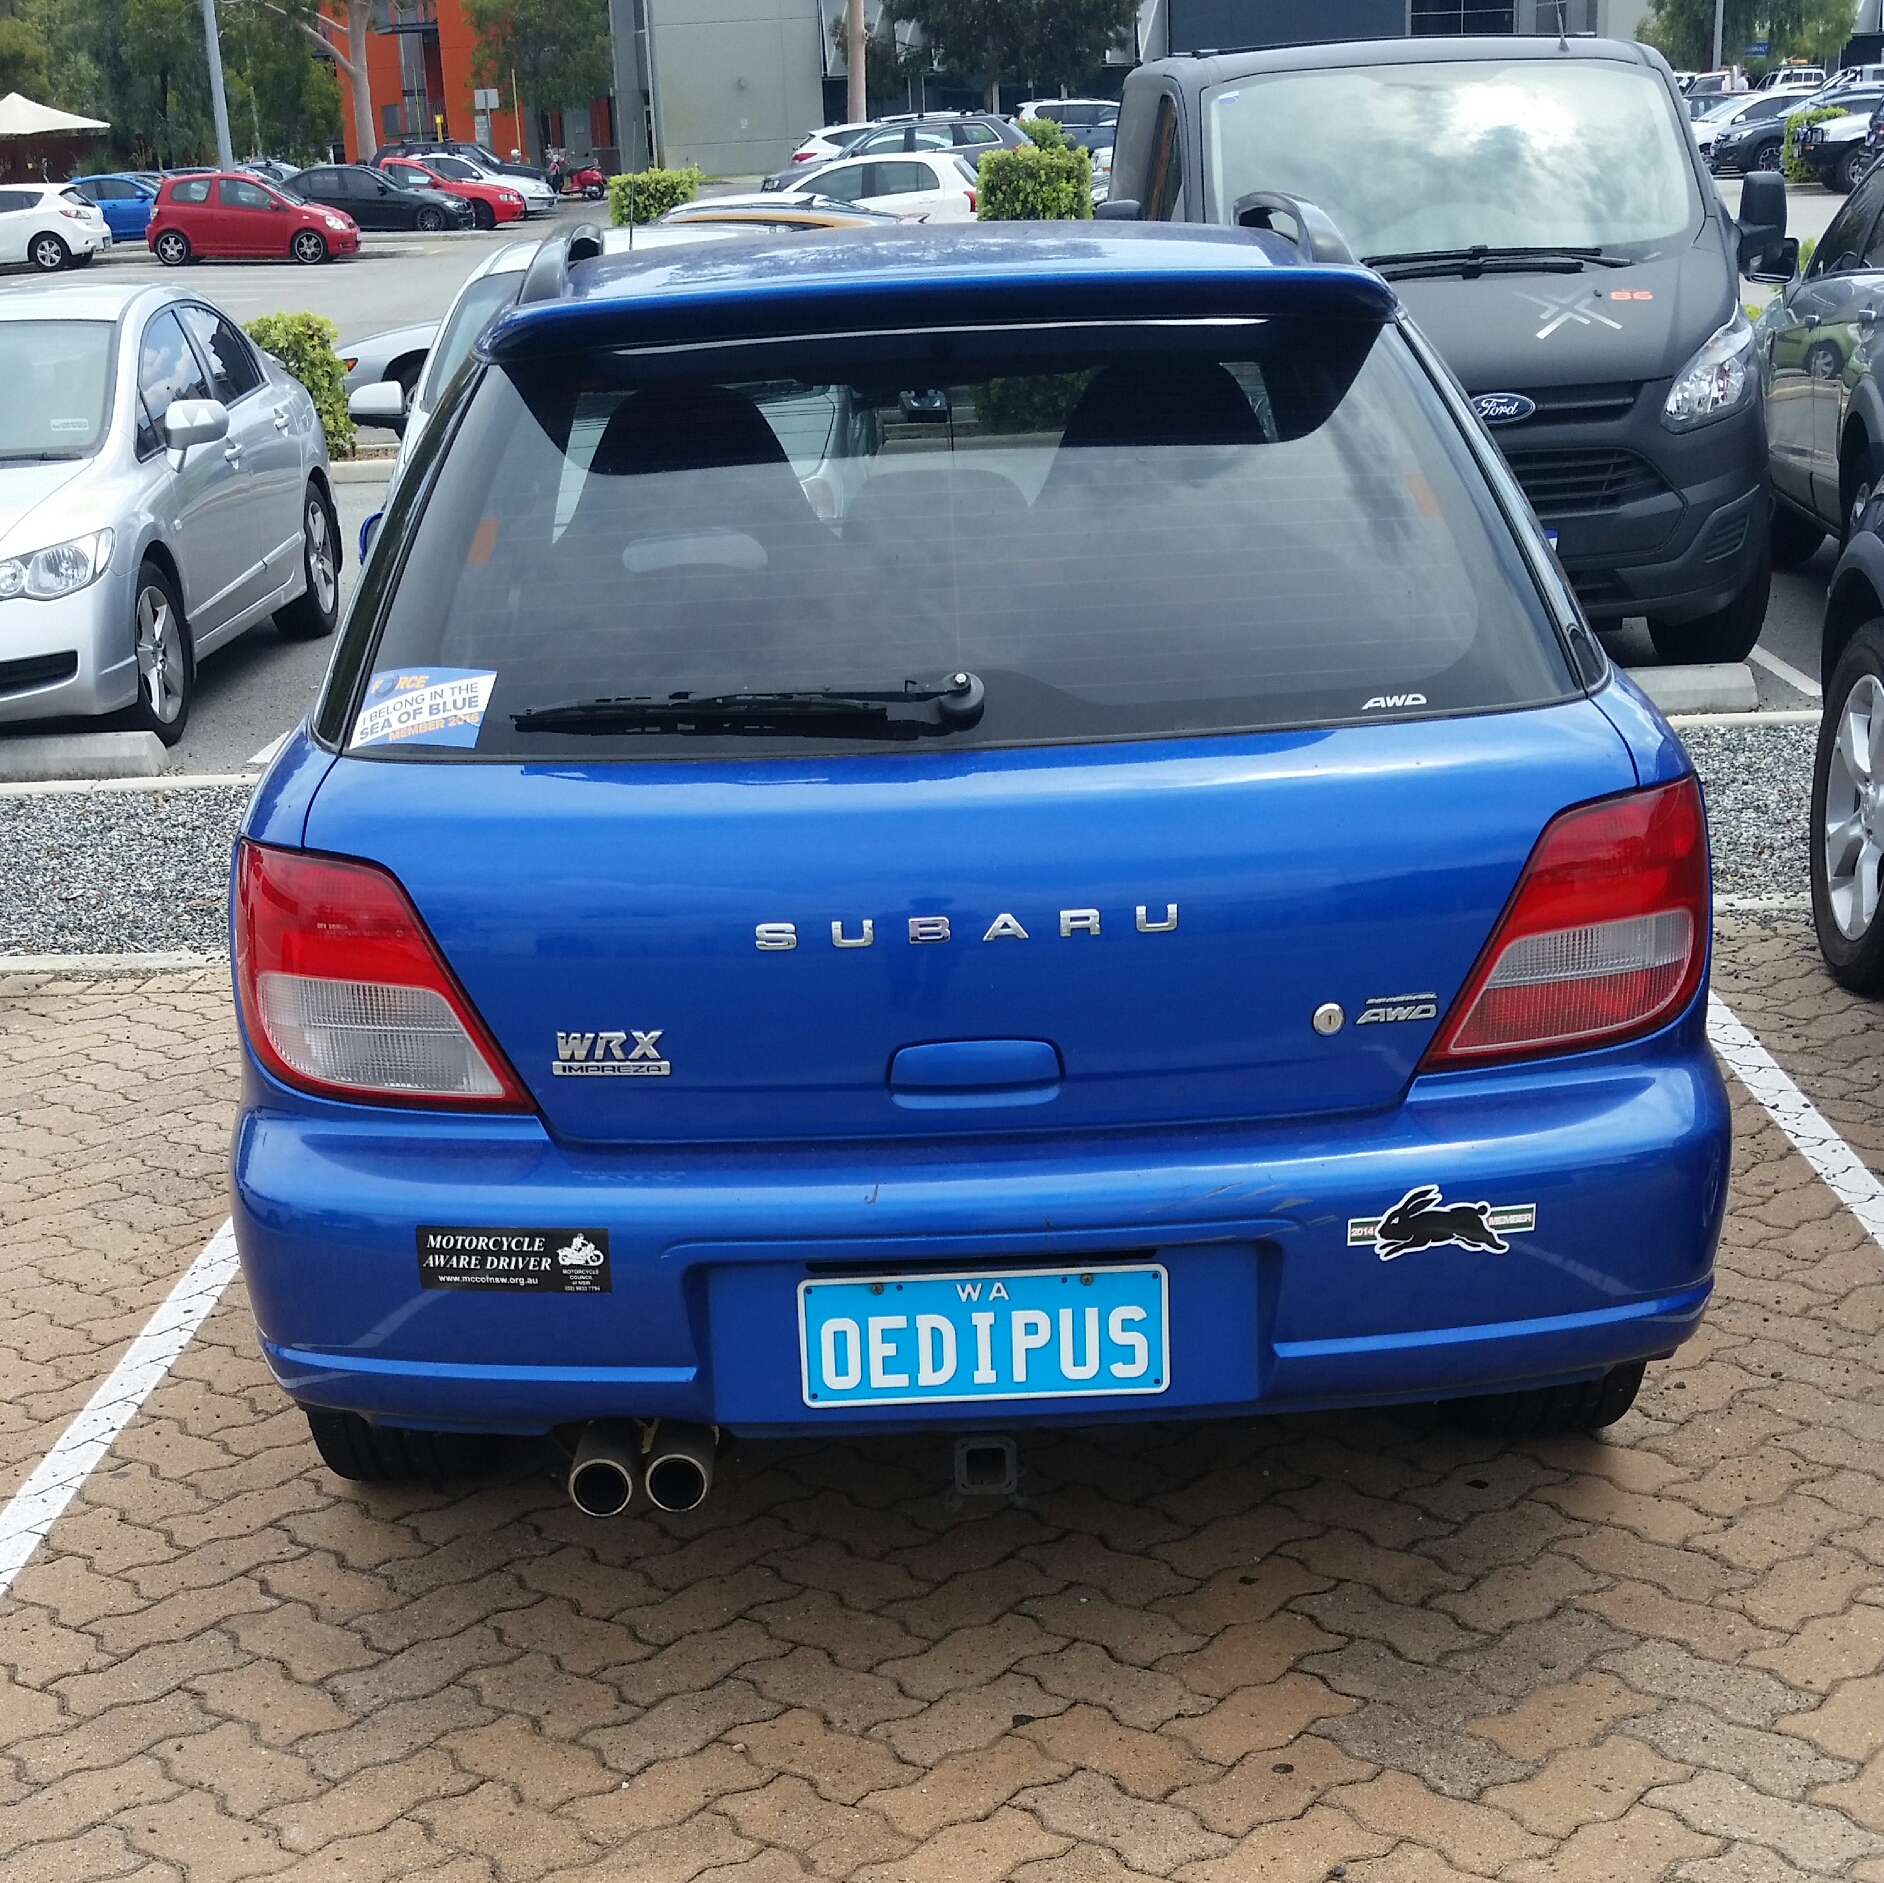 vehicle registration plate - Subaru Oedipus